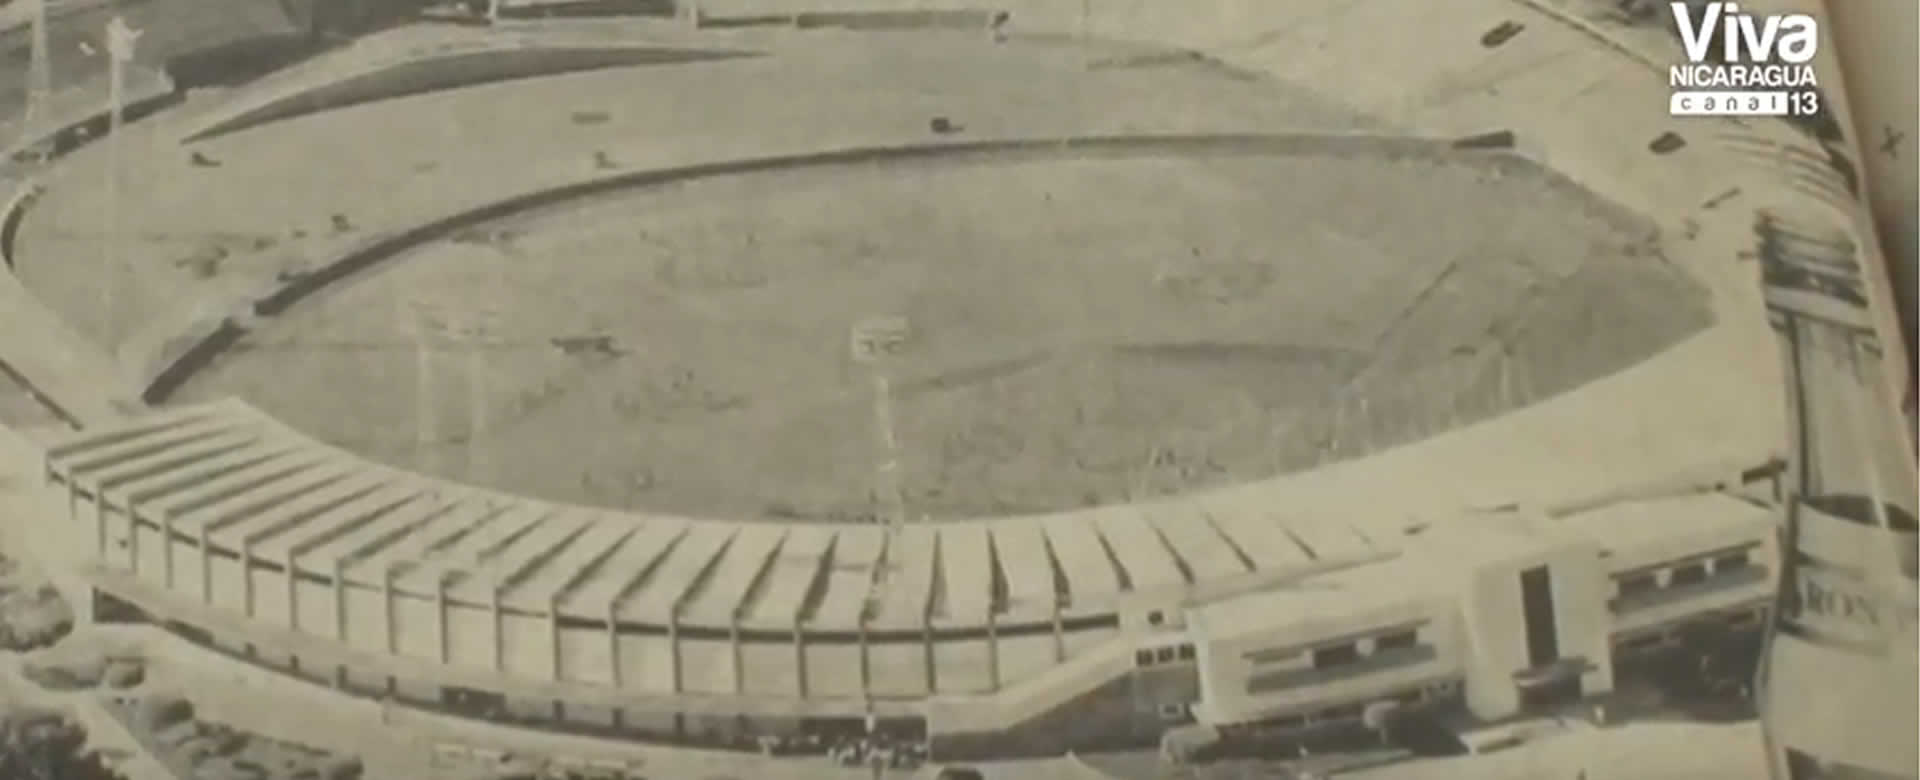 Inauguración estadio nacional 1948 fue transcendental para nuestro béisbol